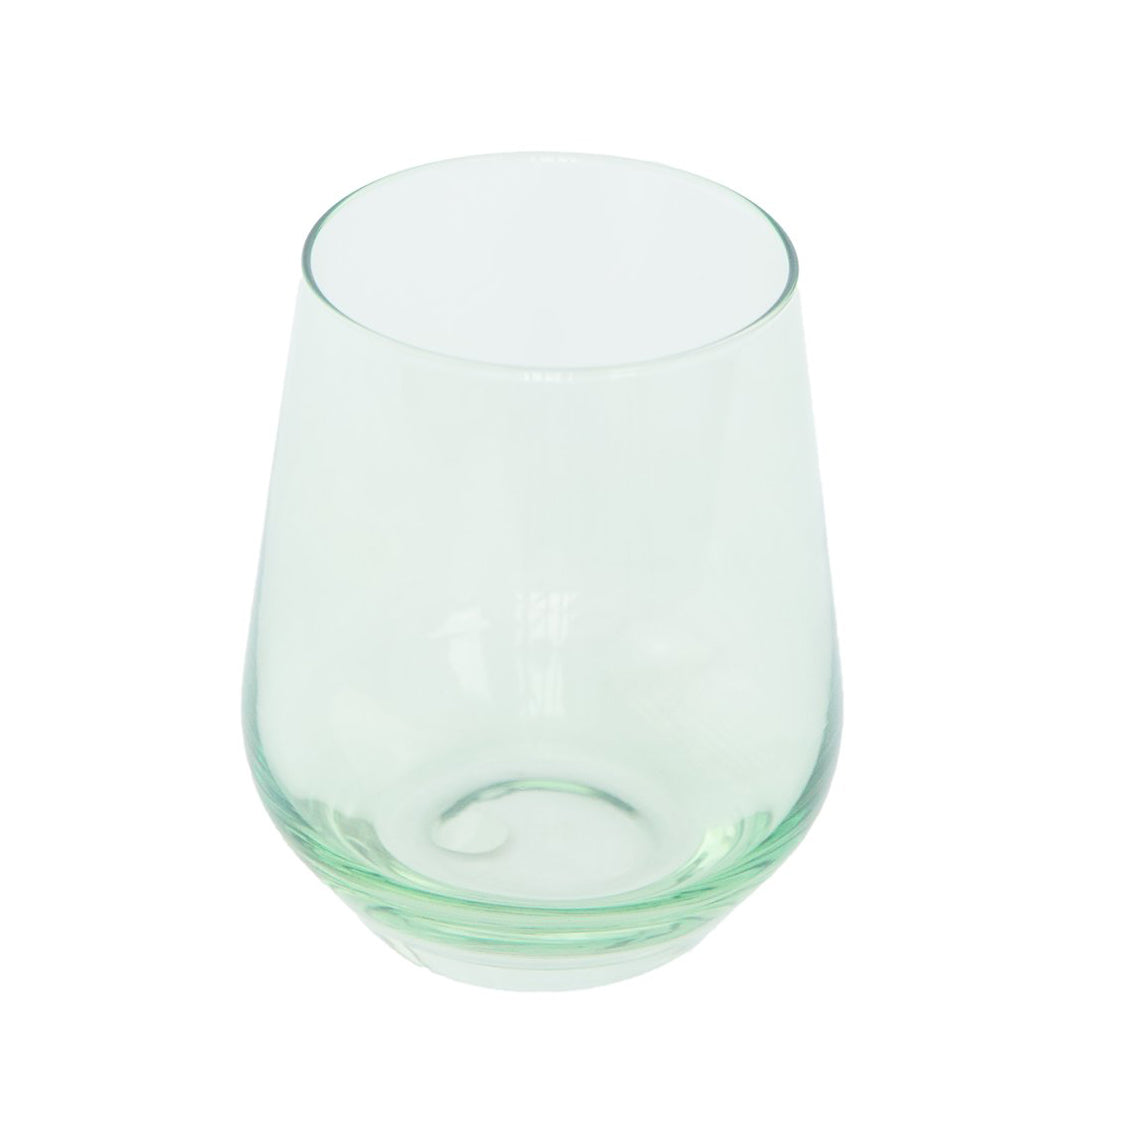 https://neighborlyshop.com/cdn/shop/products/mint-green-stemless-wine-glass-handblown-estelle-2.jpg?v=1638539471&width=1445